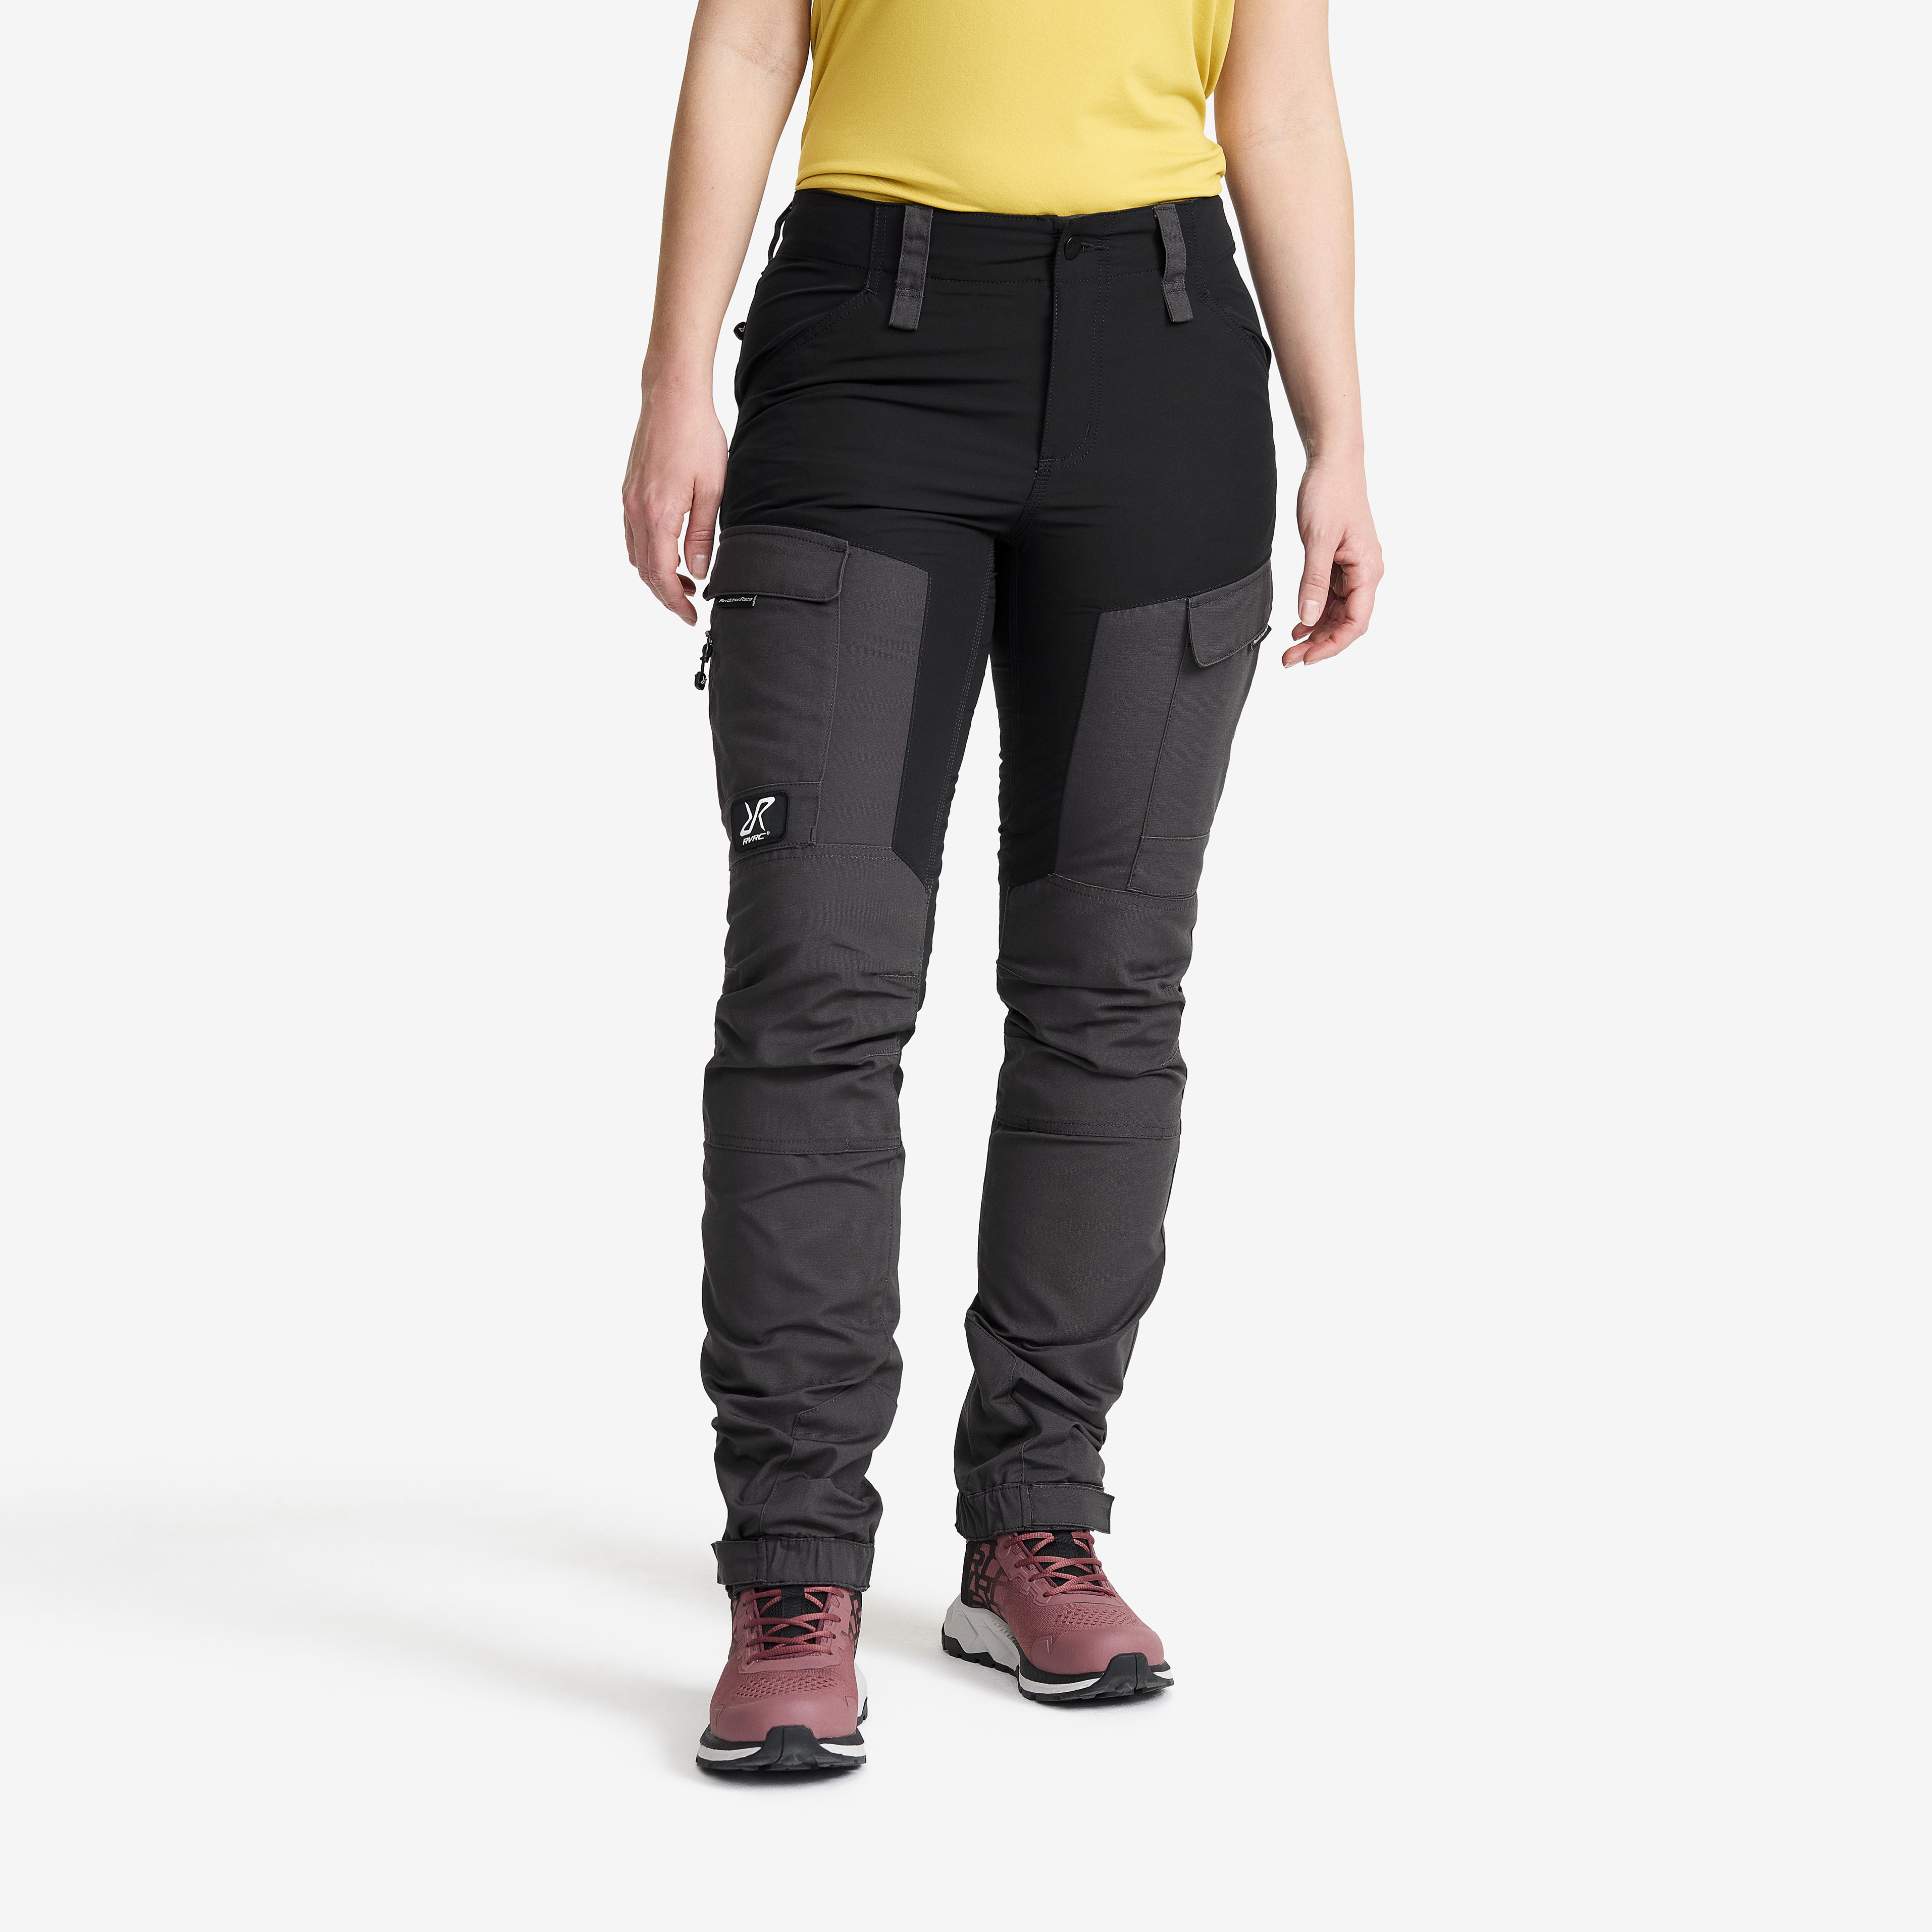 RVRC GP outdoorové kalhoty pro ženy v černé barvě